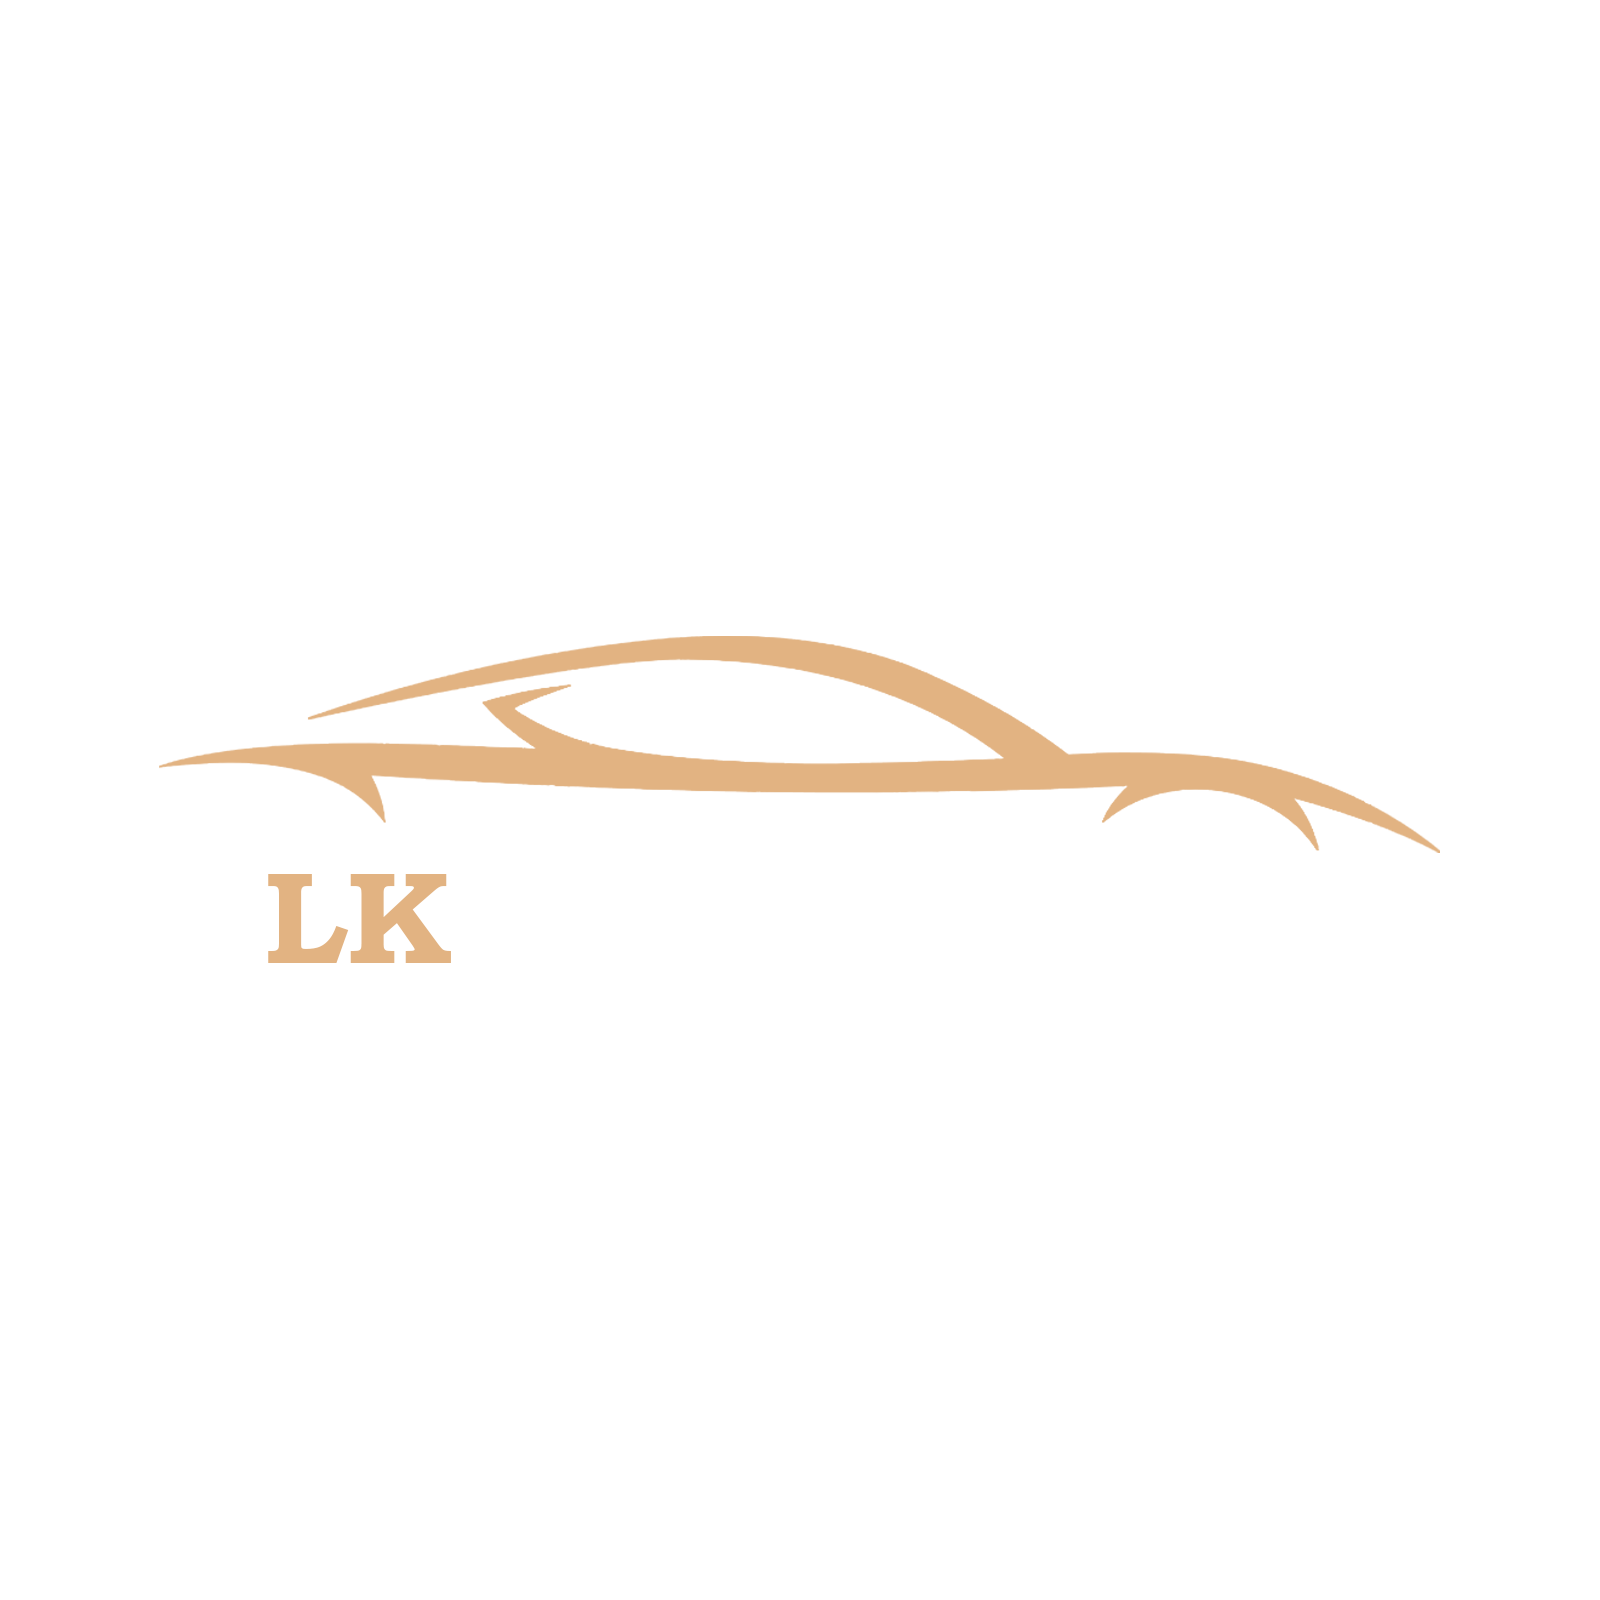 LK Motors